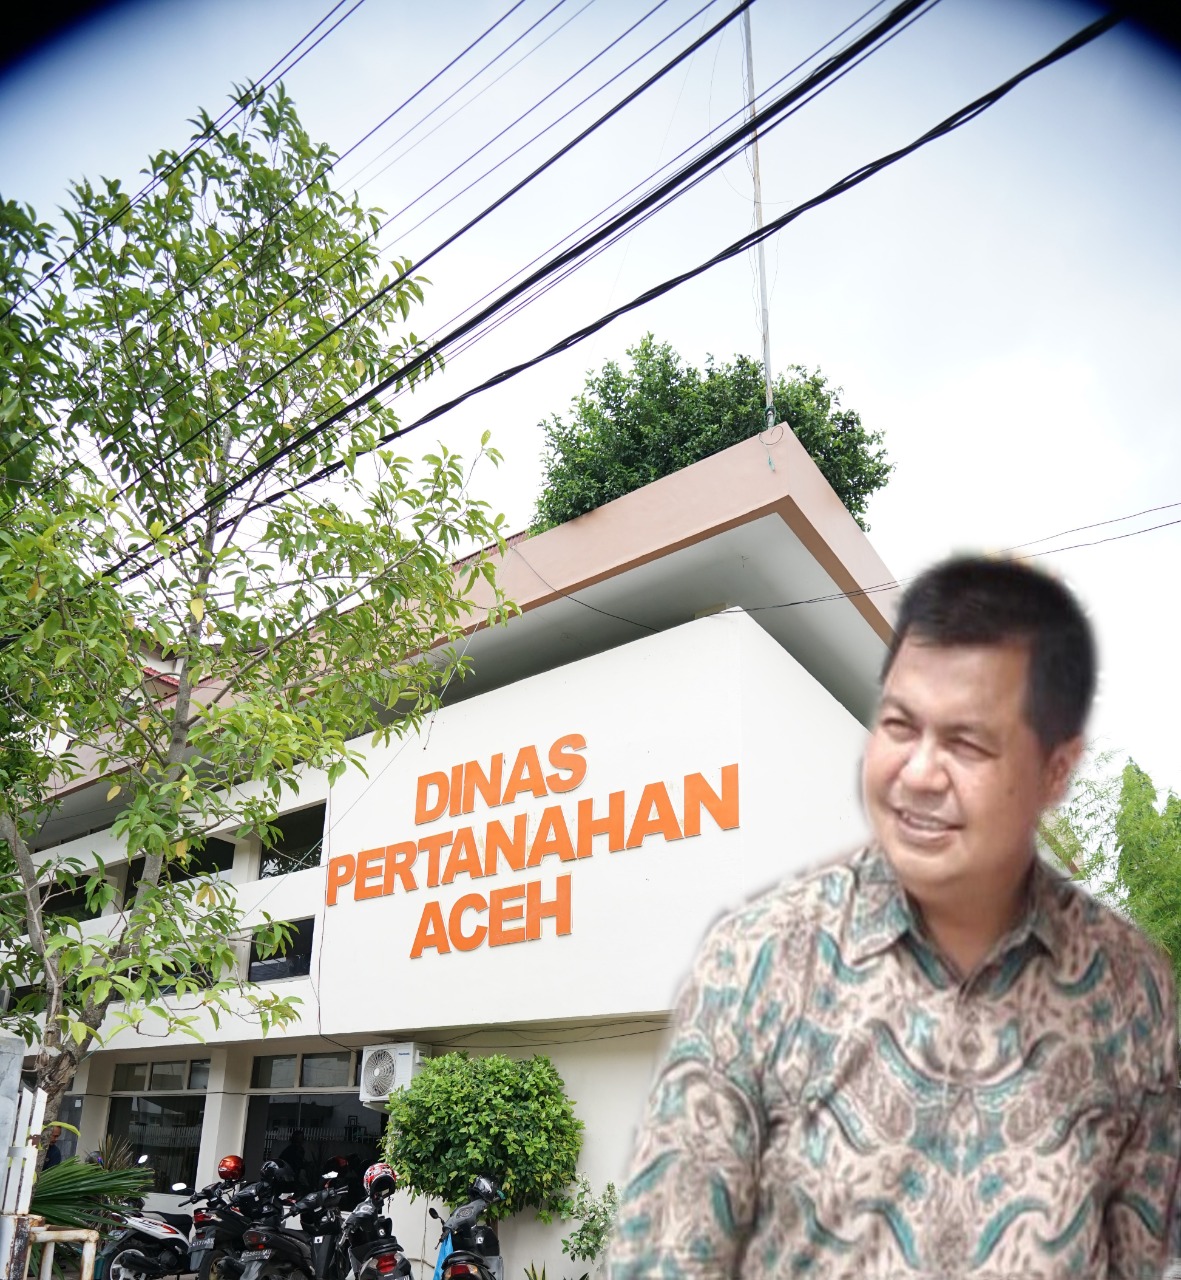 Kepala Dinas Pertanahan Aceh: Pengalihan Kanwil BPN Belum Terlaksana